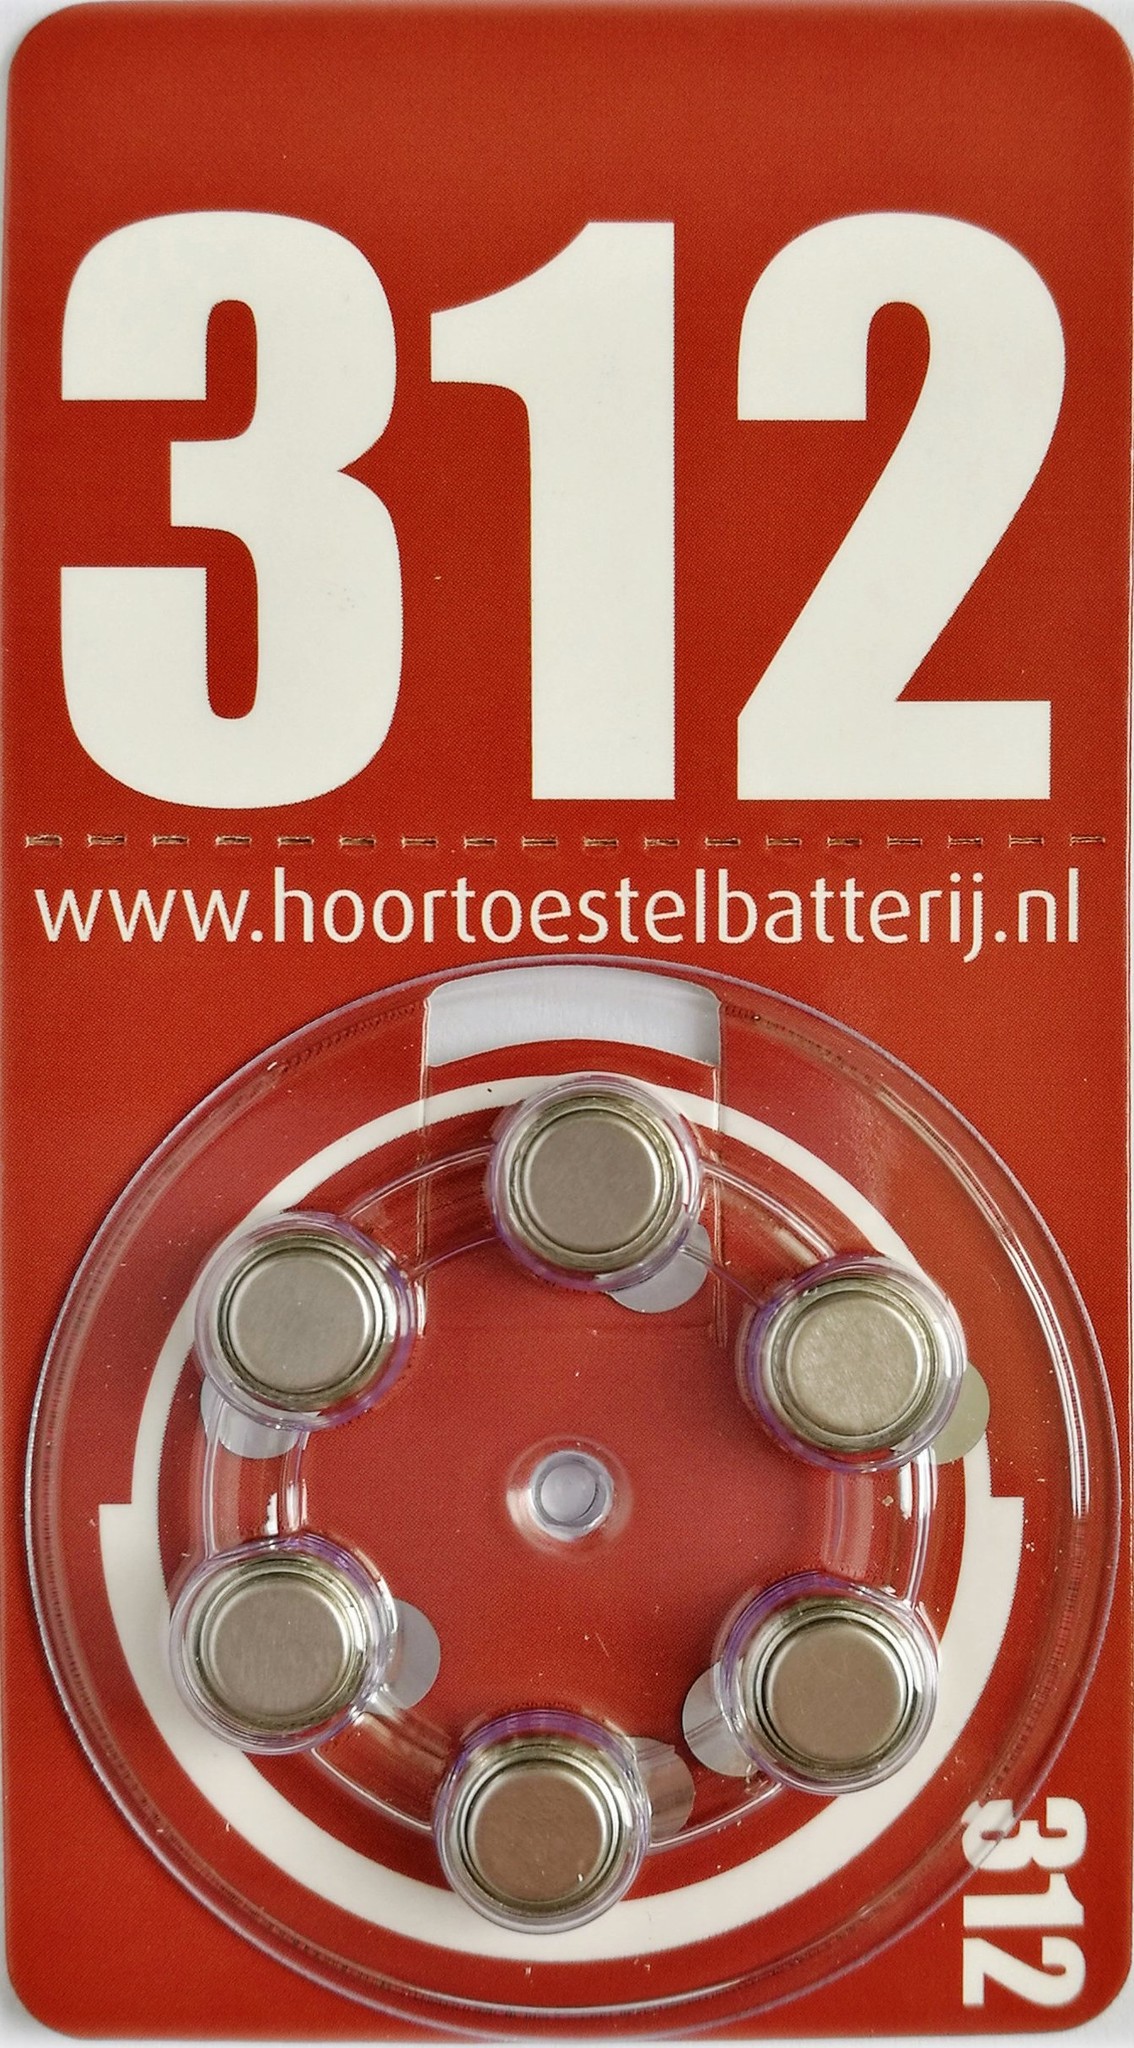 Dakraam afstuderen Snazzy HoortoestelBatterij.nl type 312 bruin €1,00 - HoortoestelBatterij.nl